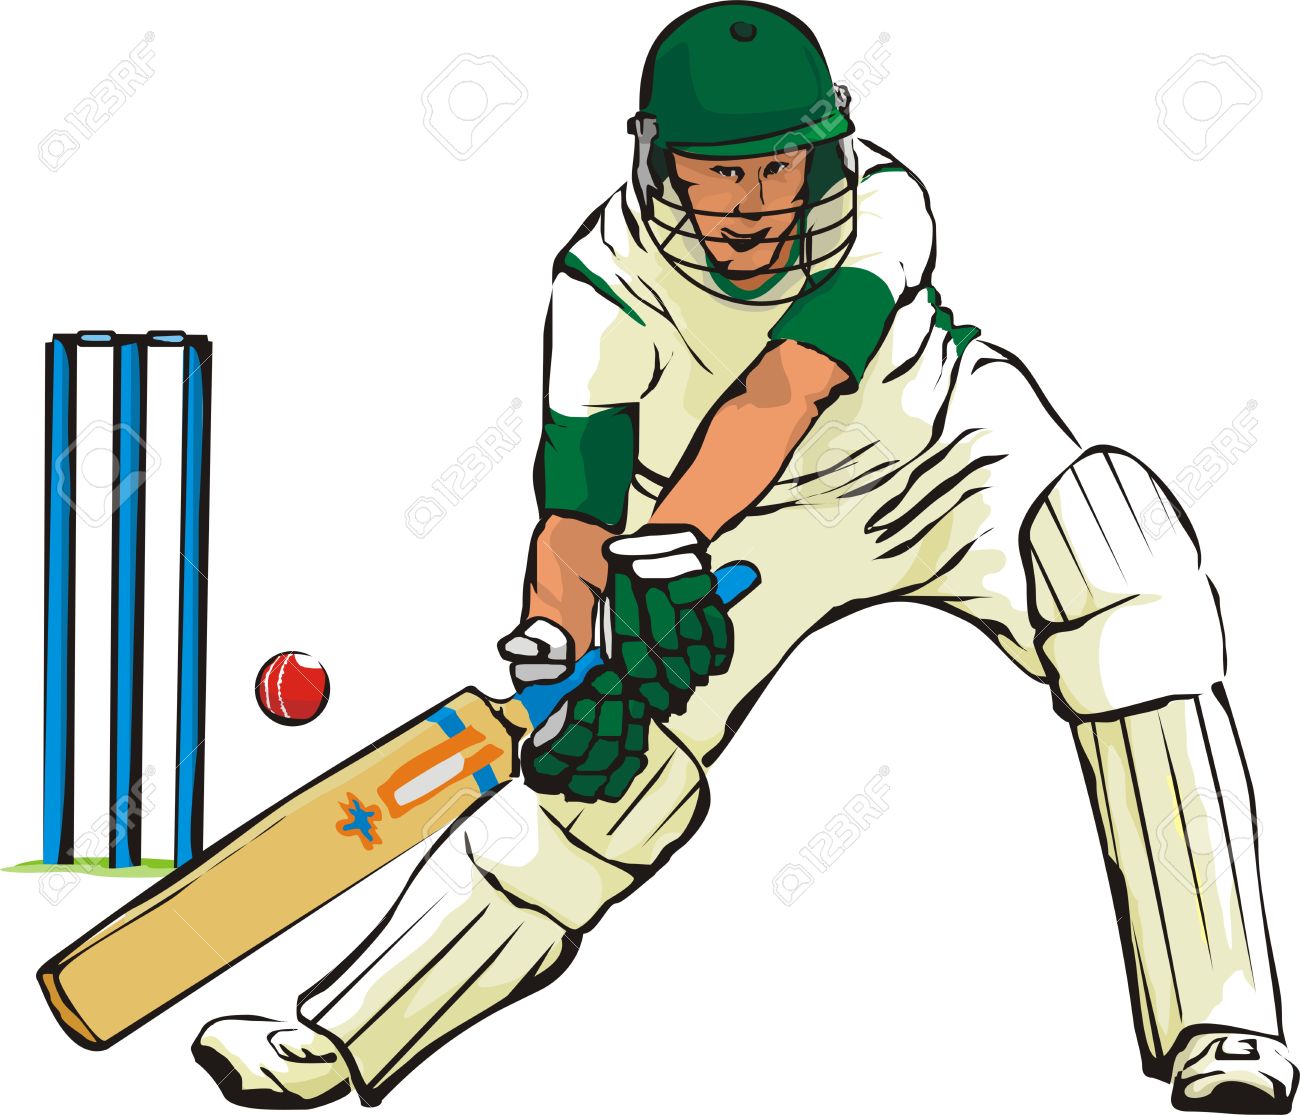 Cricket clipart free cliparta